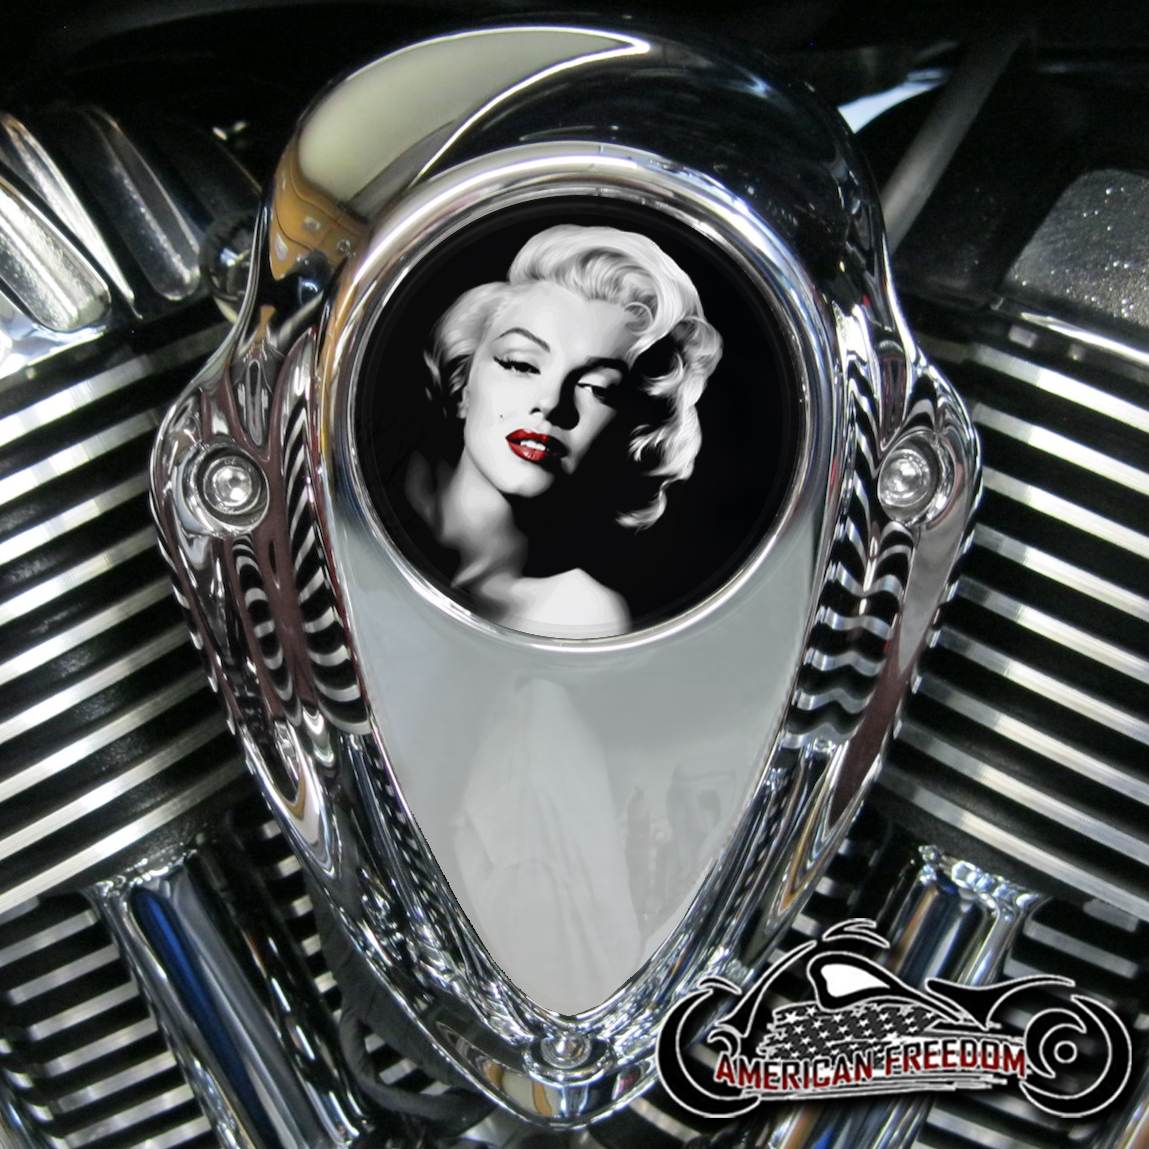 Indian Thunder Stroke Horn Insert - Marilyn Monroe Red Lips